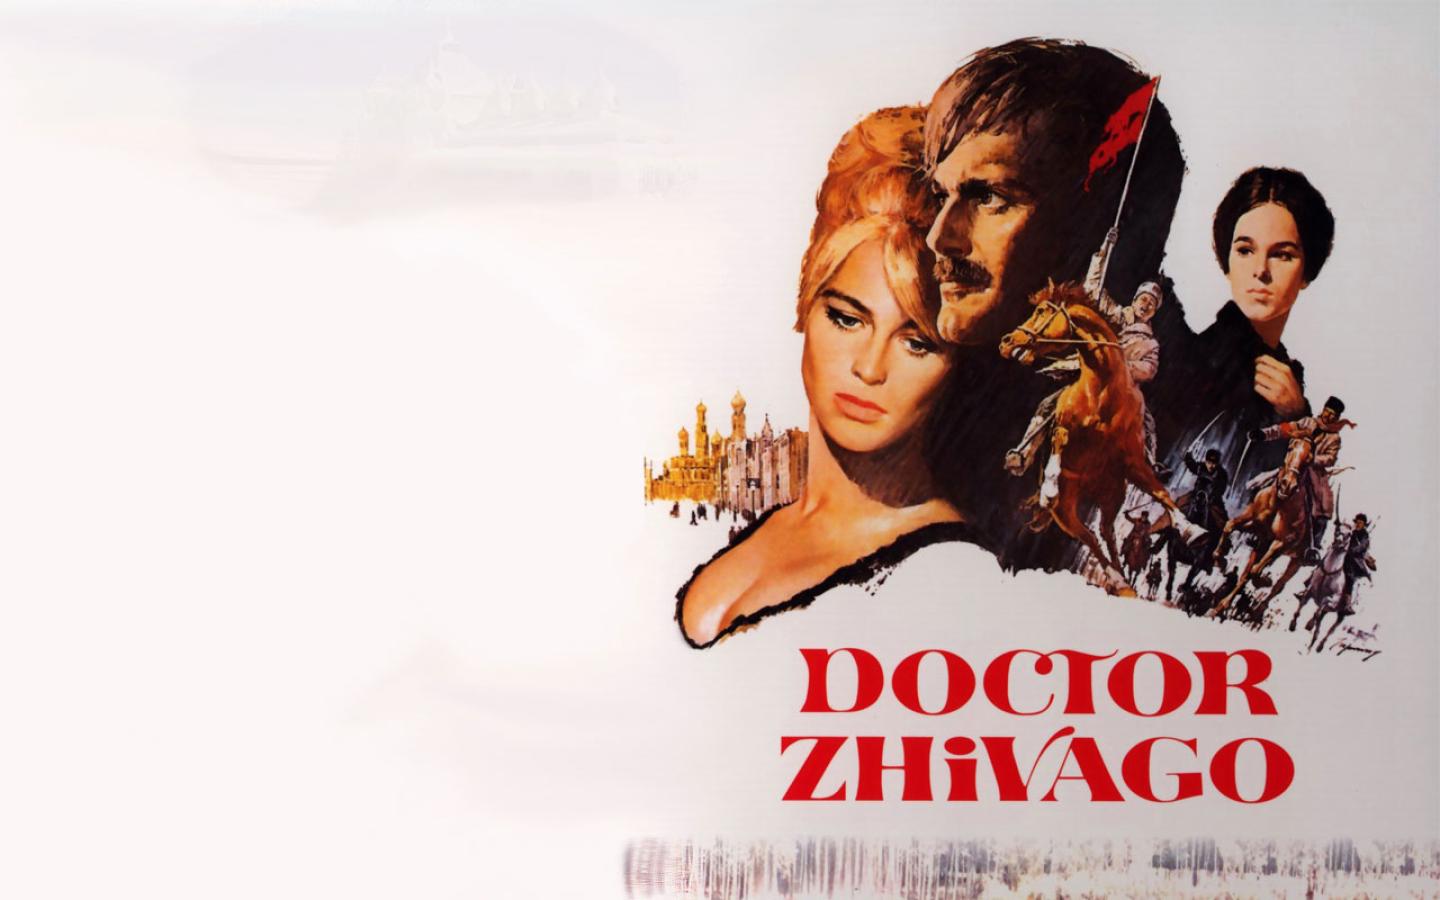 Doctor Zhivago Wallpaper #2 1440 x 900 